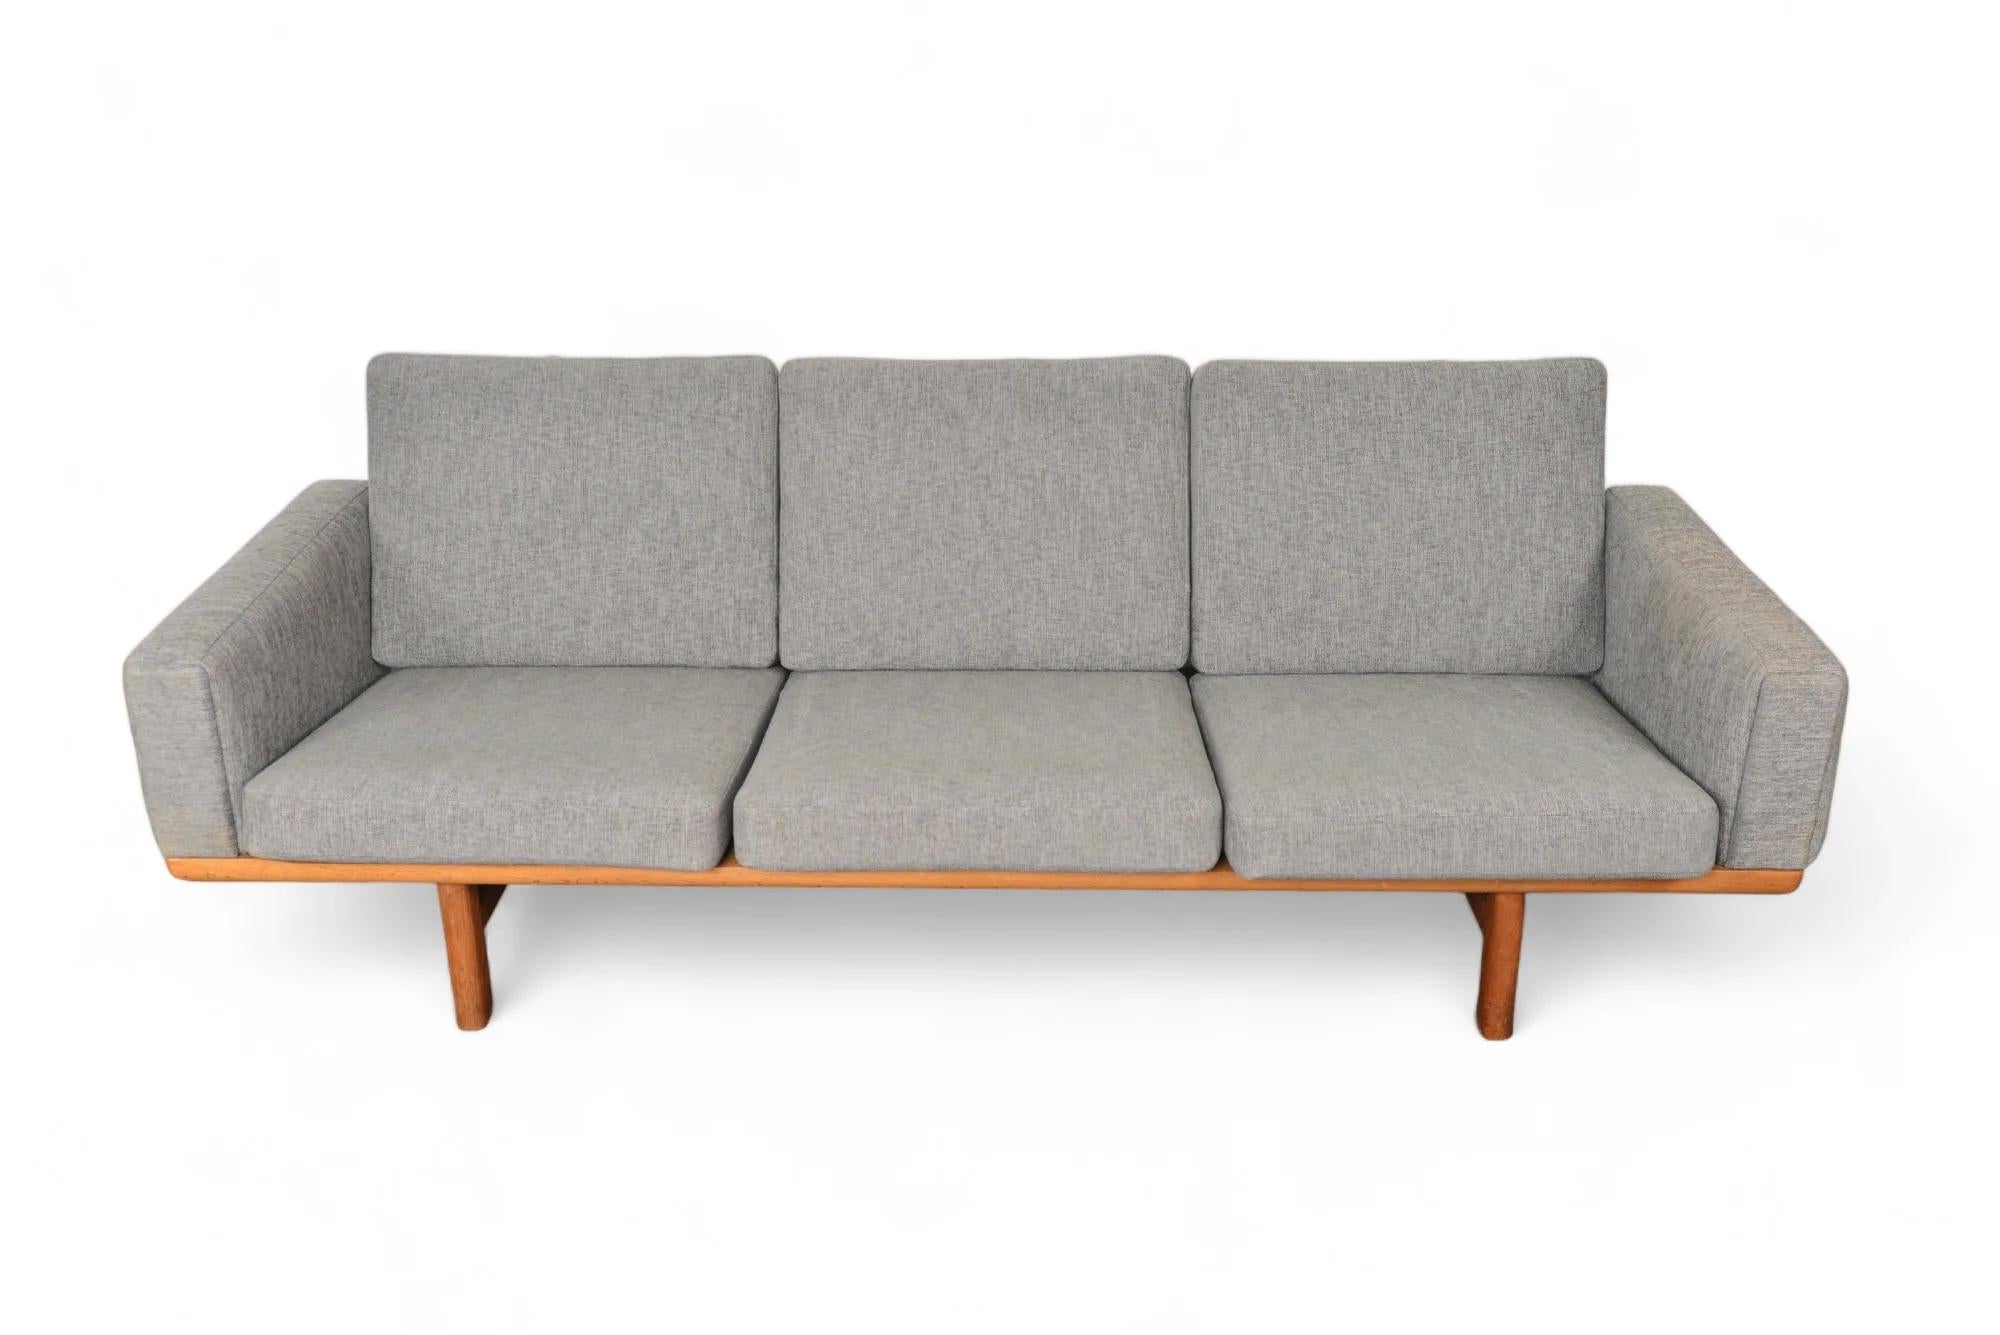 Dieses moderne dänische Dreisitzer-Sofa aus Eiche wurde in den 1950er Jahren von Hans Wegner als Modell GE- 236-3 für Getama entworfen. Dieses hervorragend erhaltene Möbelstück weist eine skulpturale Rückenlehne auf und ist mit gepolsterten